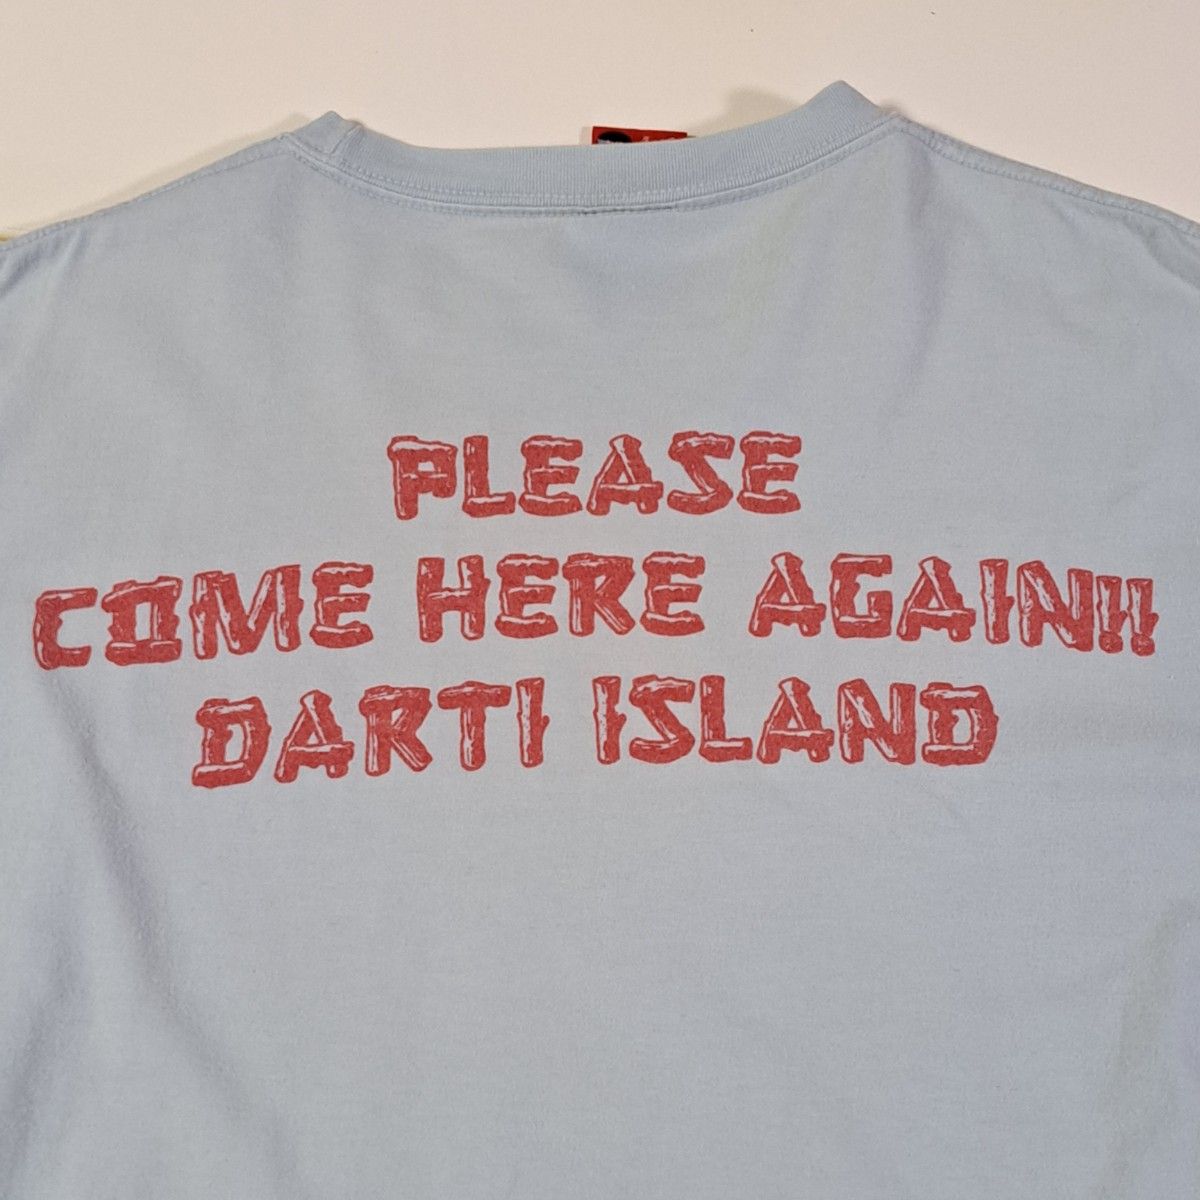 ステュディオダルチザン DARTI ISLAND  両面プリント  Tシャツ 水色